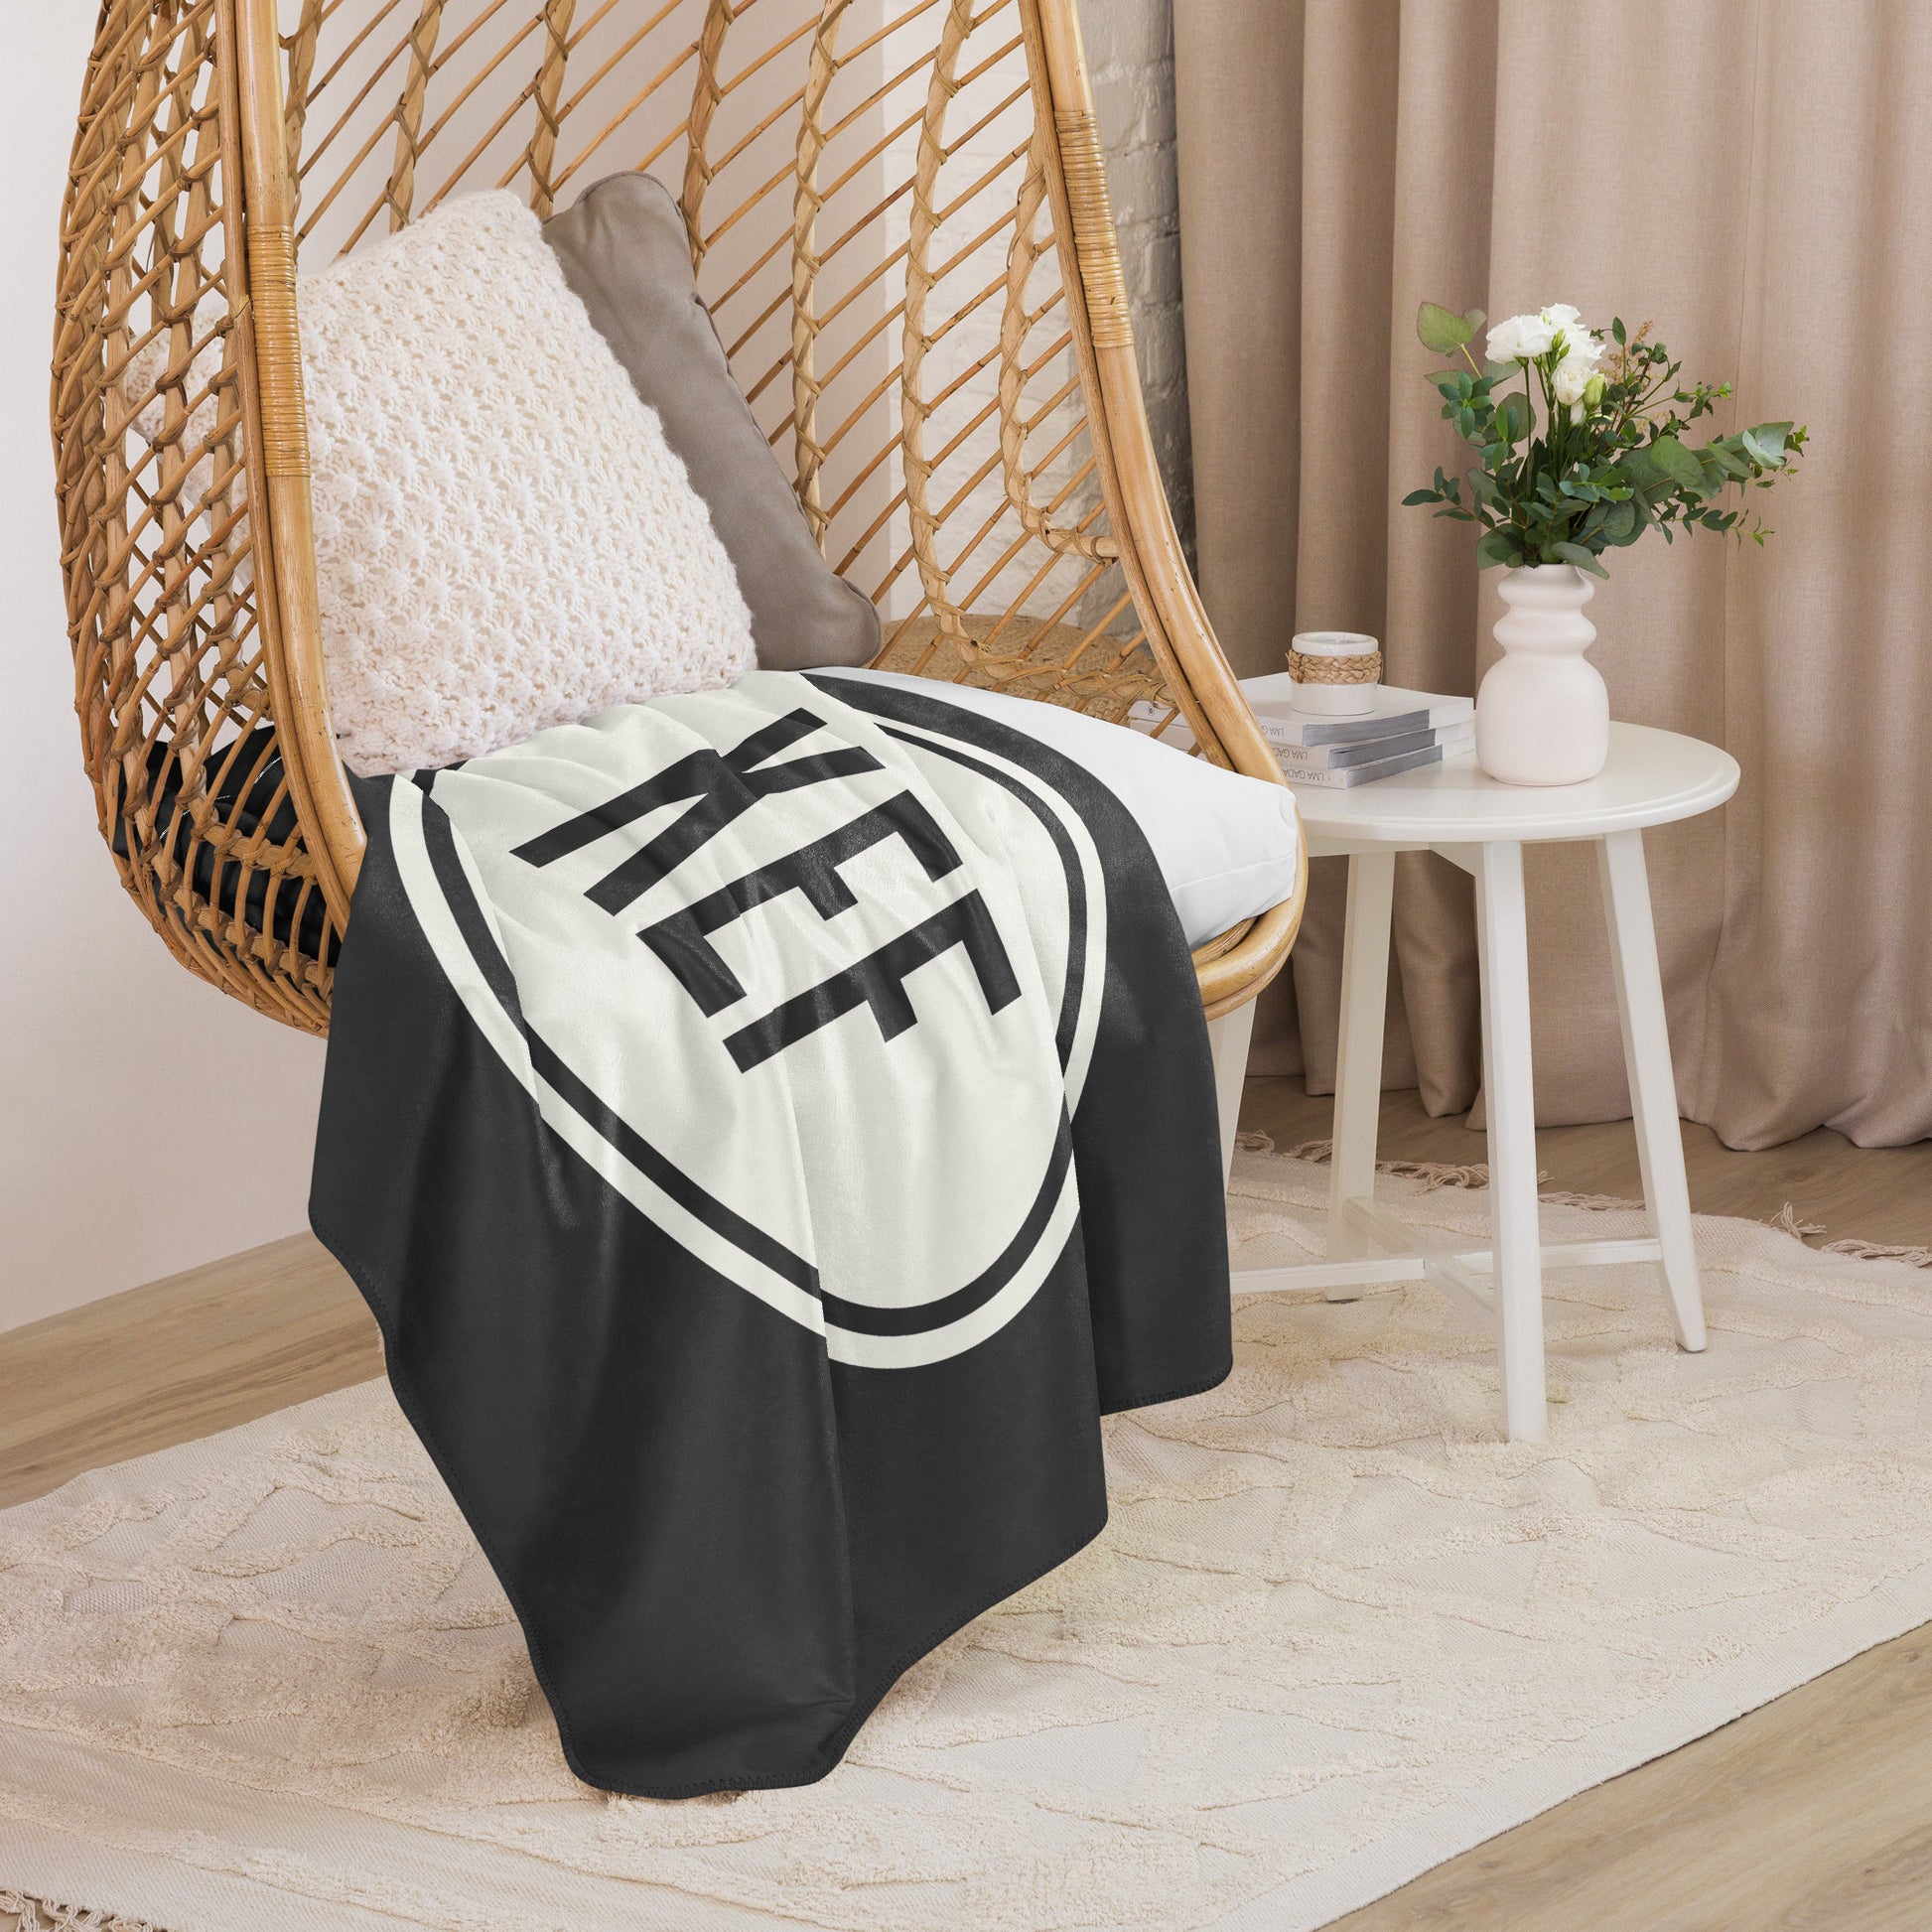 Unique Travel Gift Sherpa Blanket - White Oval • KEF Reykjavik • YHM Designs - Image 06